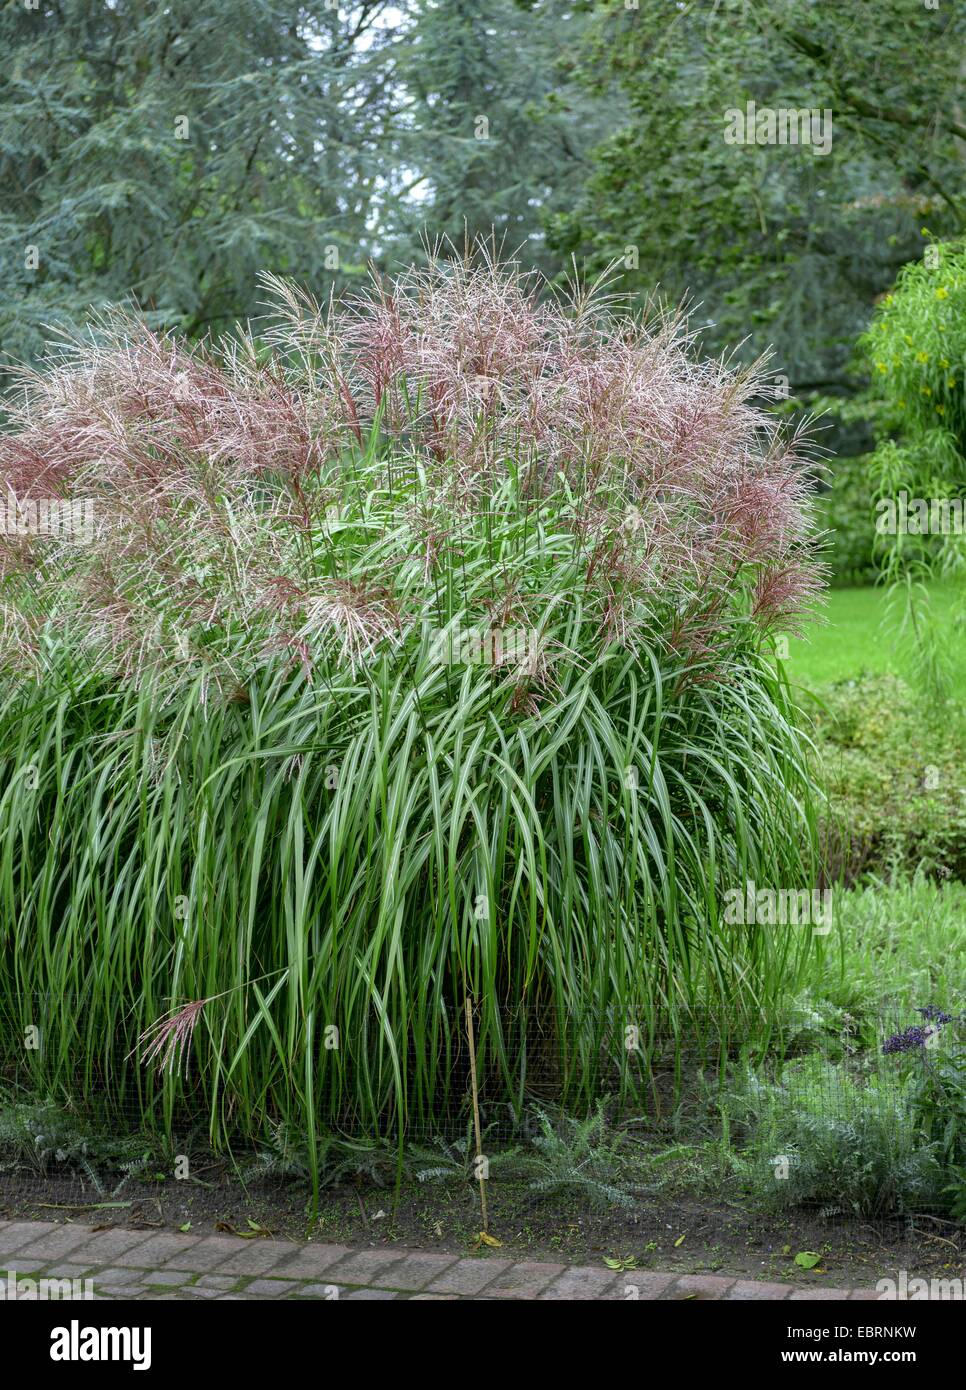 Chinese silver grass, Zebra grass, Tiger grass (Miscanthus sinensis 'Malepartus', Miscanthus sinensis Malepartus), cultivar Malepartus Stock Photo